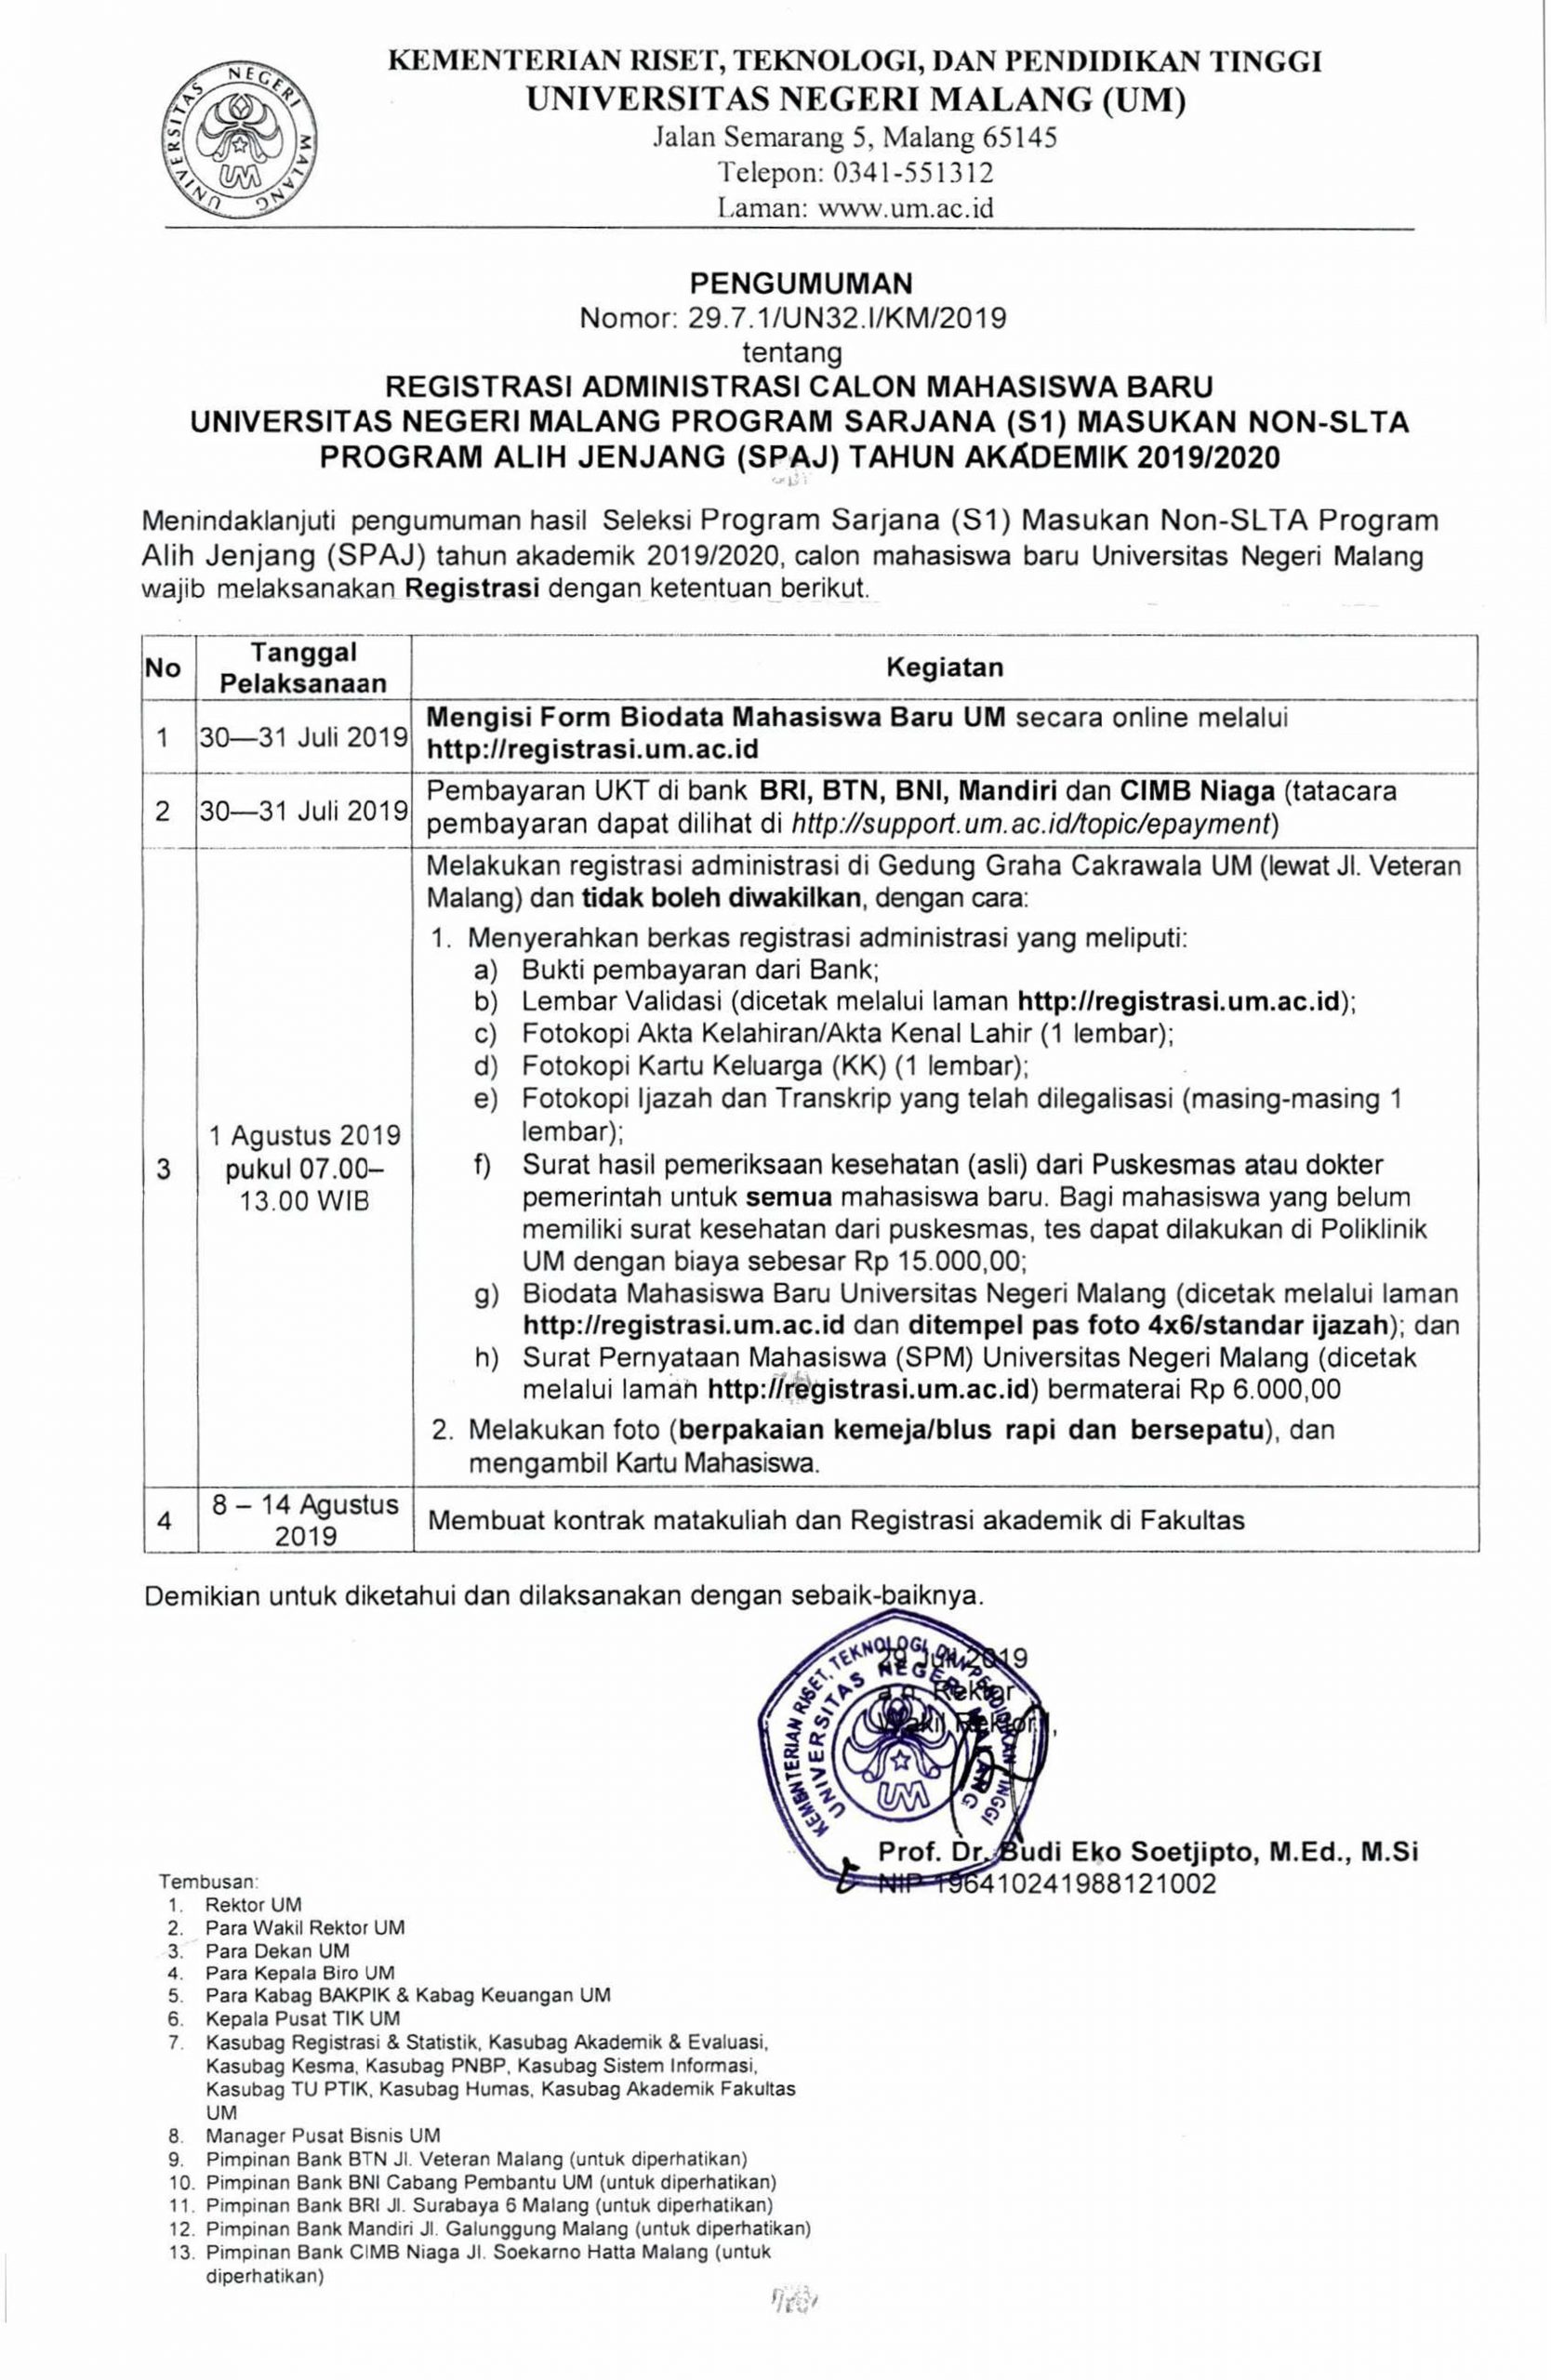 Registrasi Administrasi Calon Mahasiswa Baru Universitas Negeri Malang Program Sarjana (S1) Masukan Non-SLTA Program Alih Jenjang (SPAJ) Tahun Akademik 2019/2020